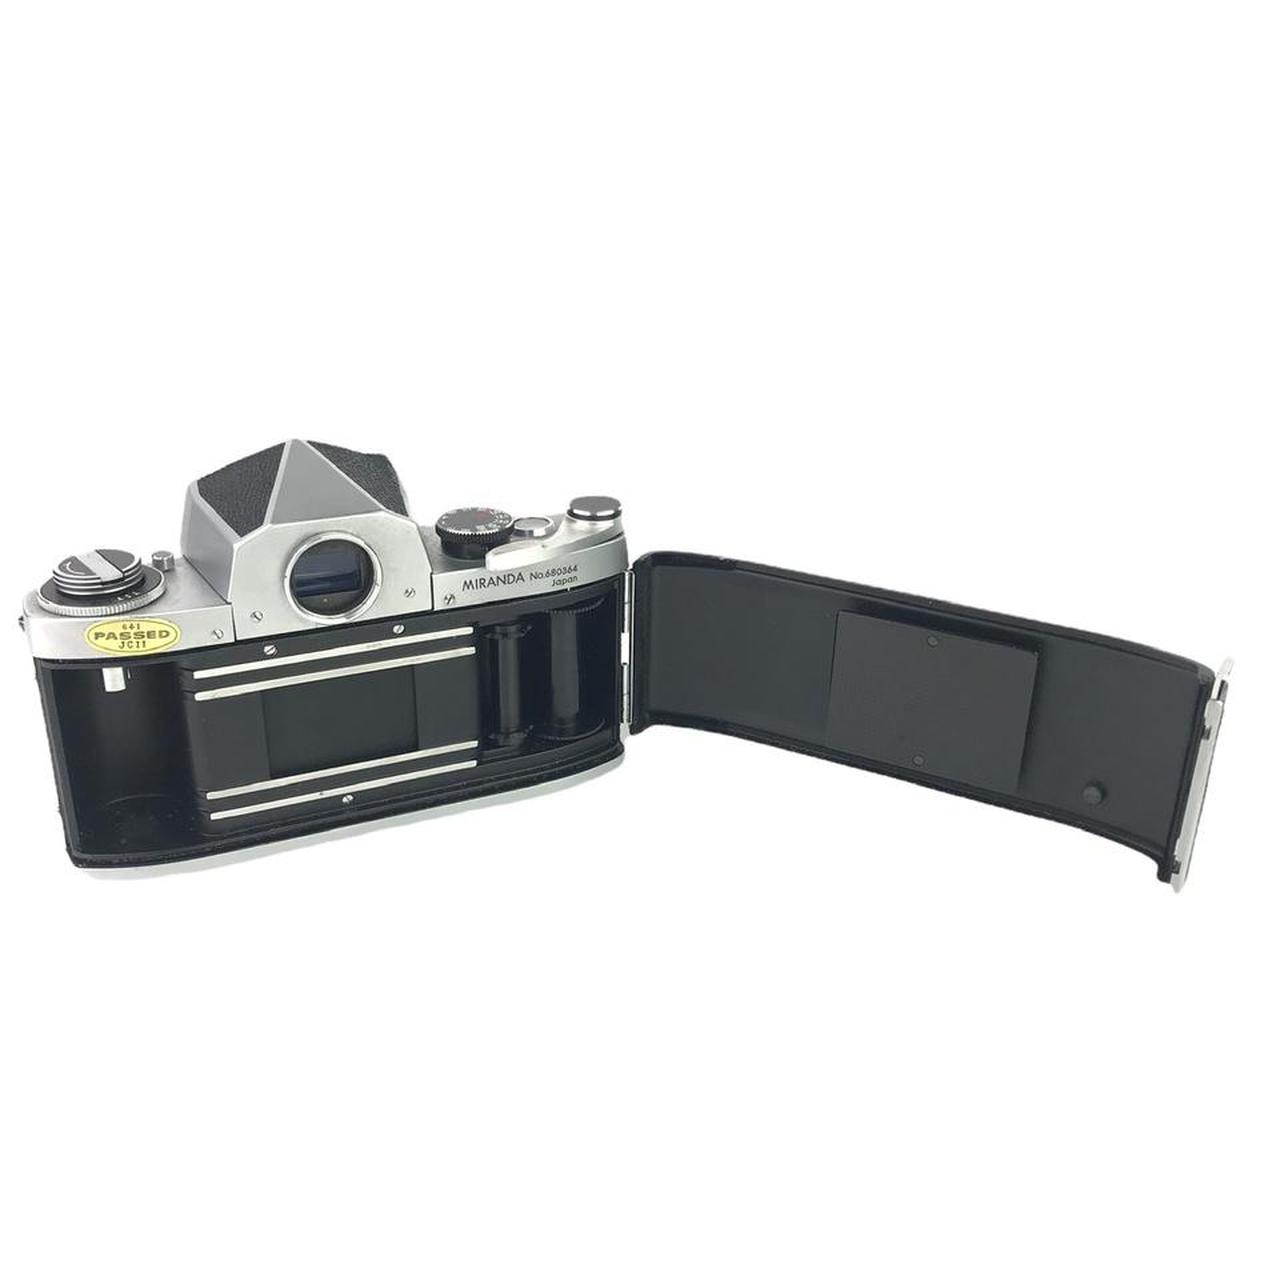 Product Image 4 - Miranda T Film Camera 

Comes